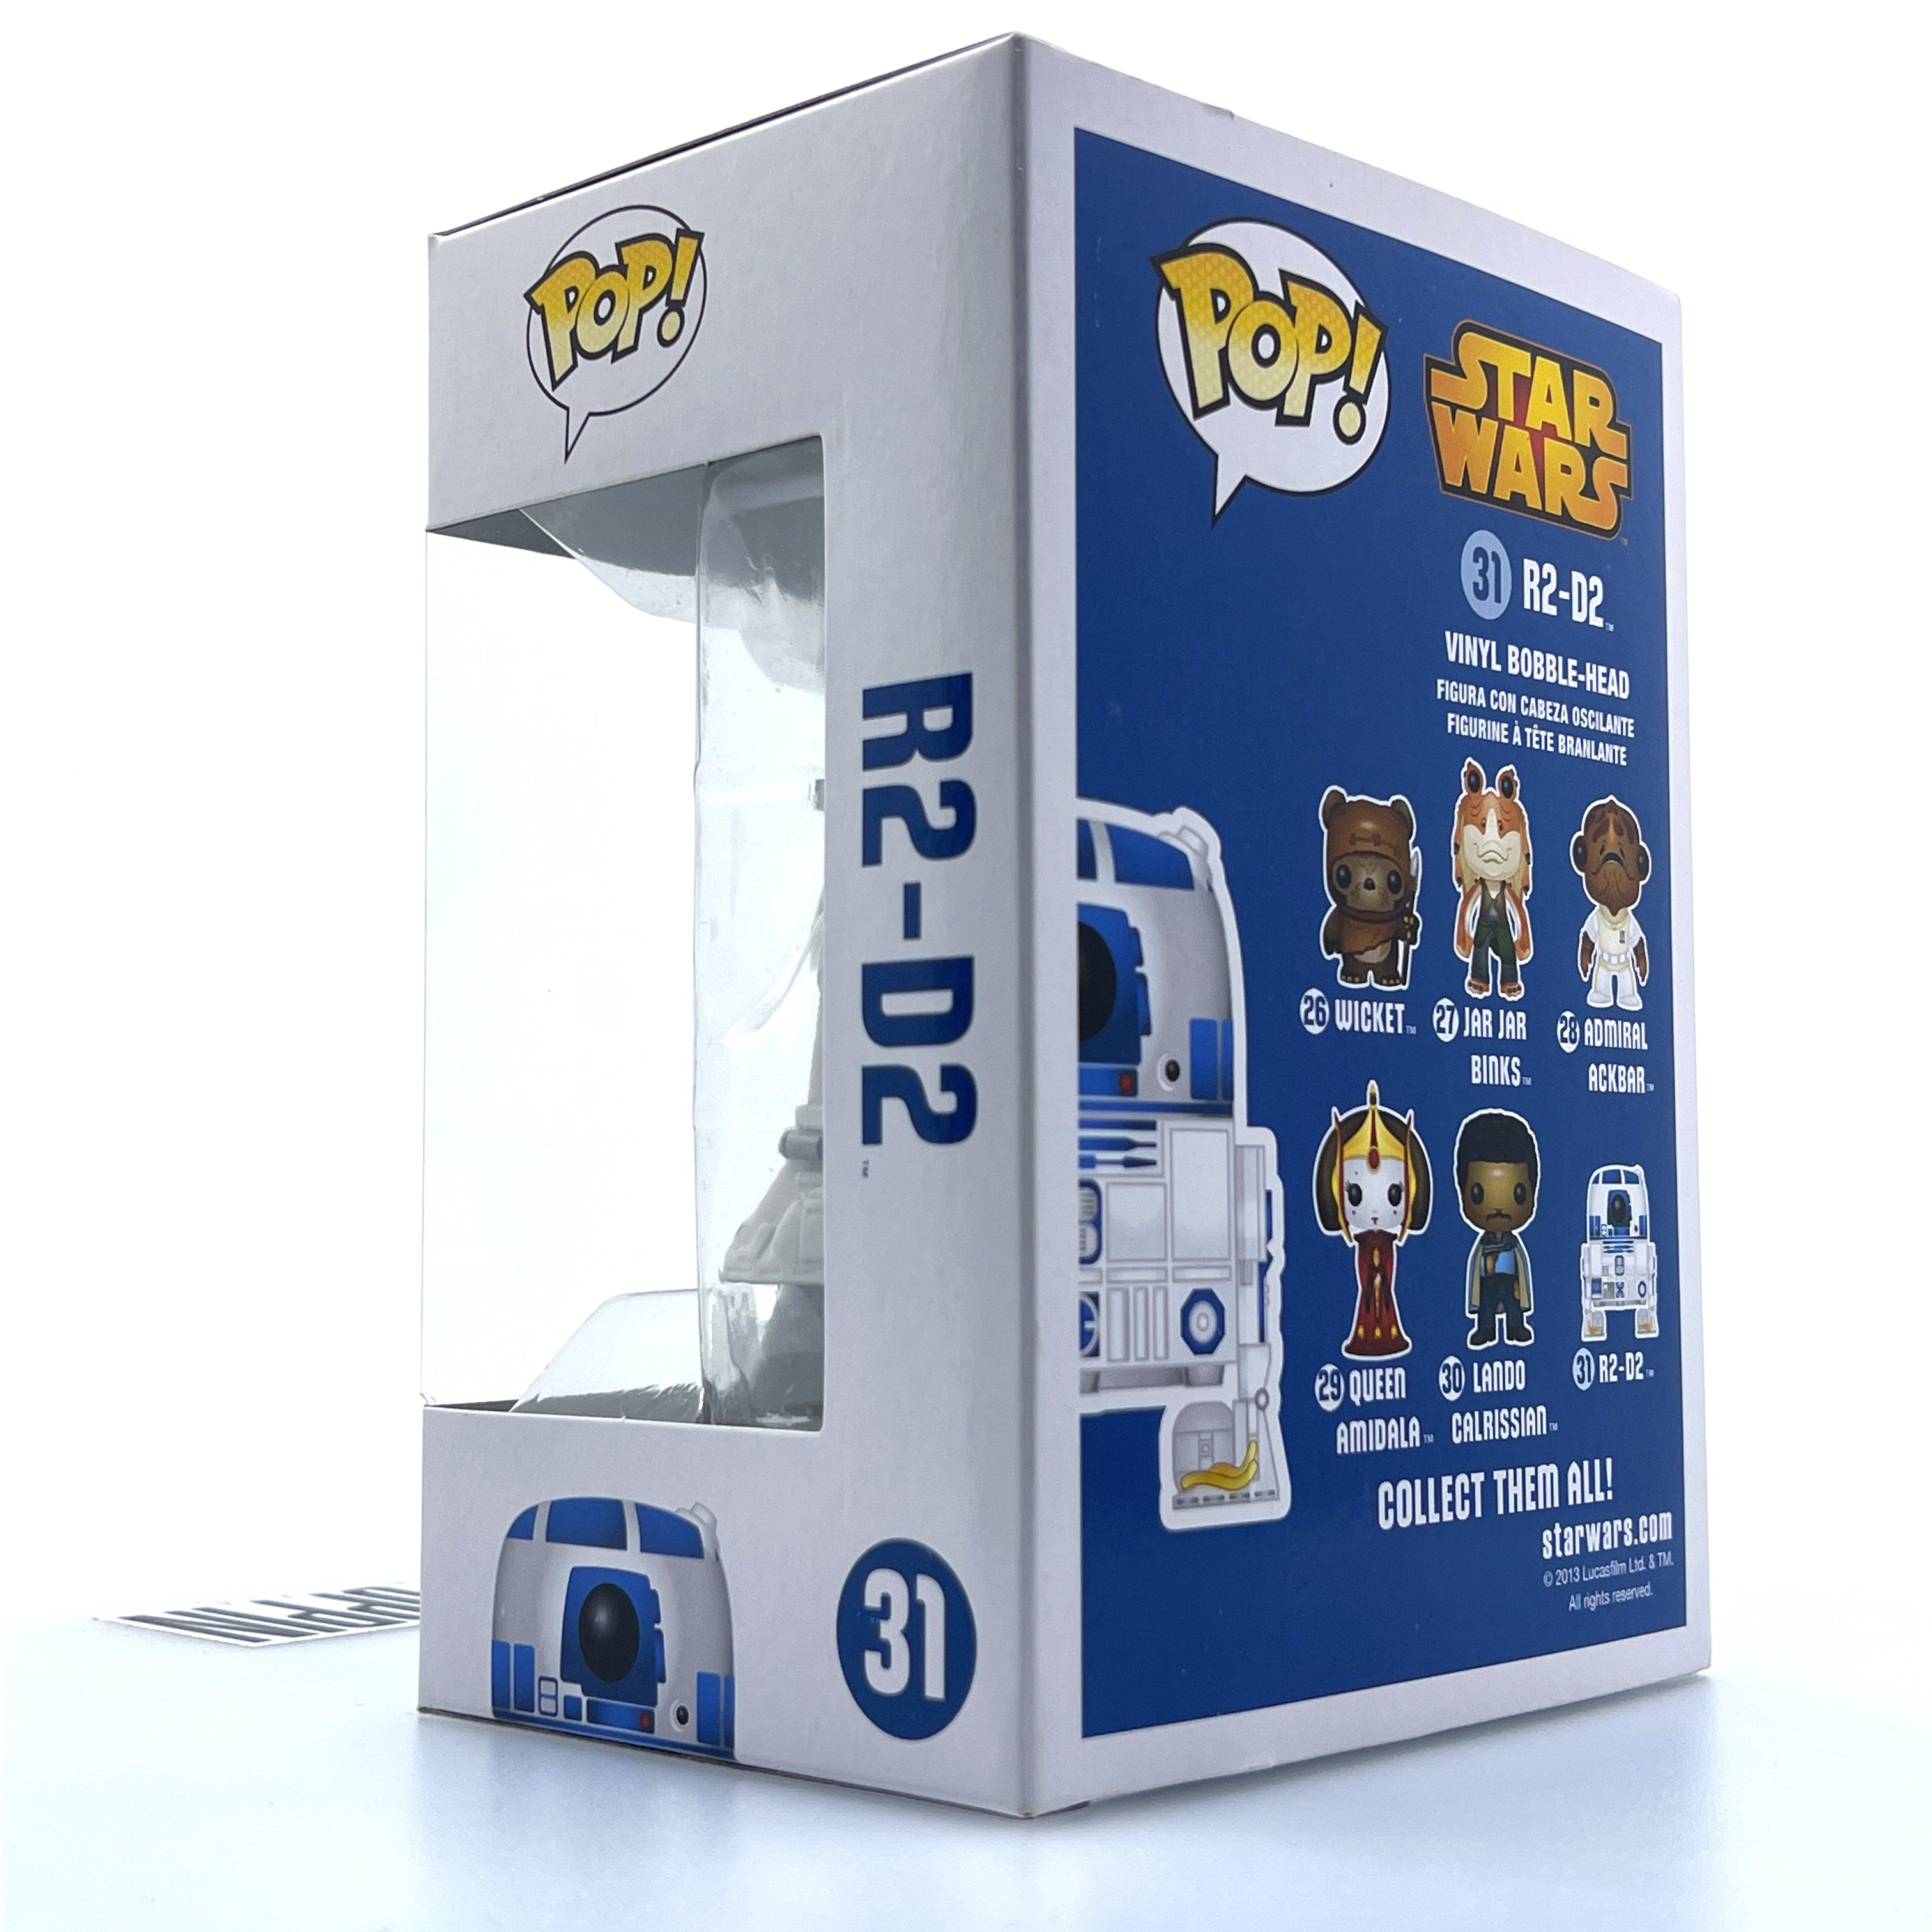 Funko Pop Star Wars R2-D2 Blue Box Vaulted 31